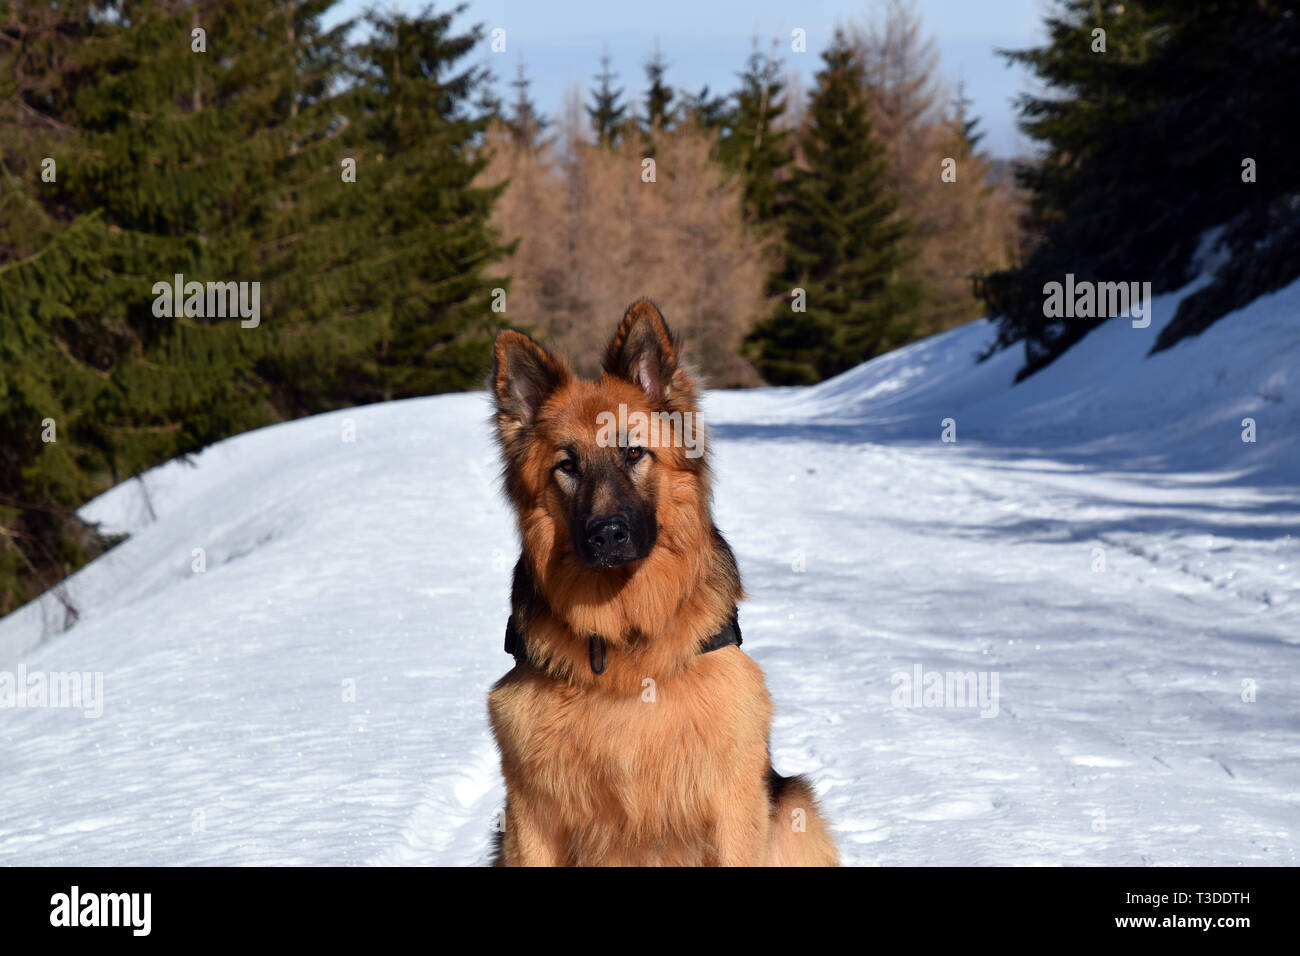 German Shepherd (long haired) portrait in winter scenery. Stock Photo